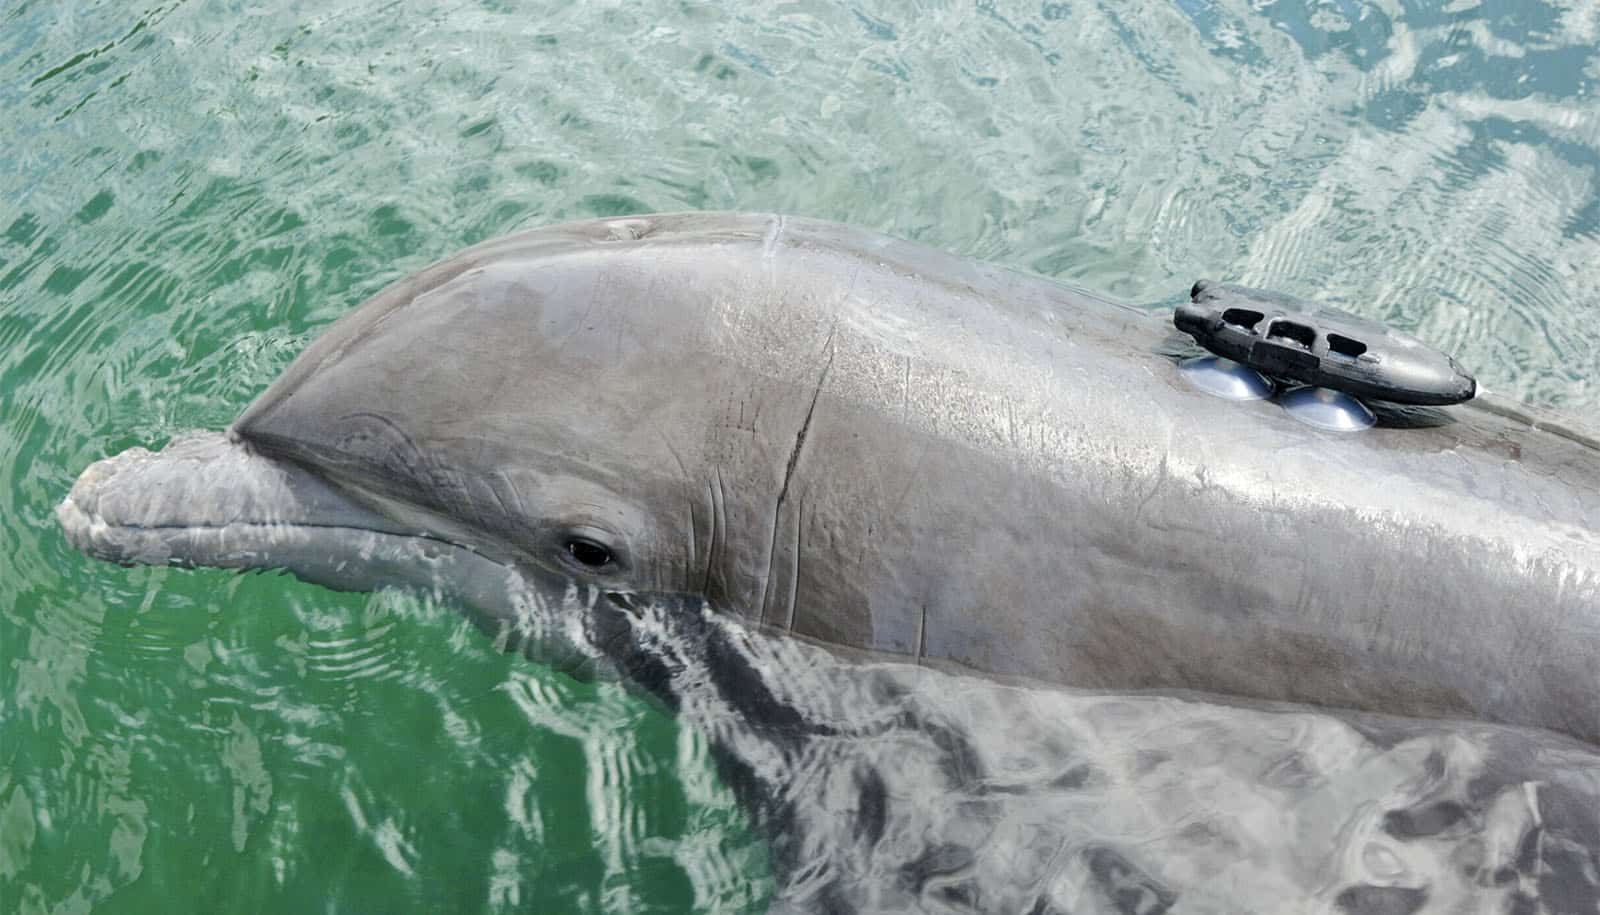 kleiner schwarzer Gegenstand, der mit Saugnäpfen am Rücken des Delphins befestigt ist